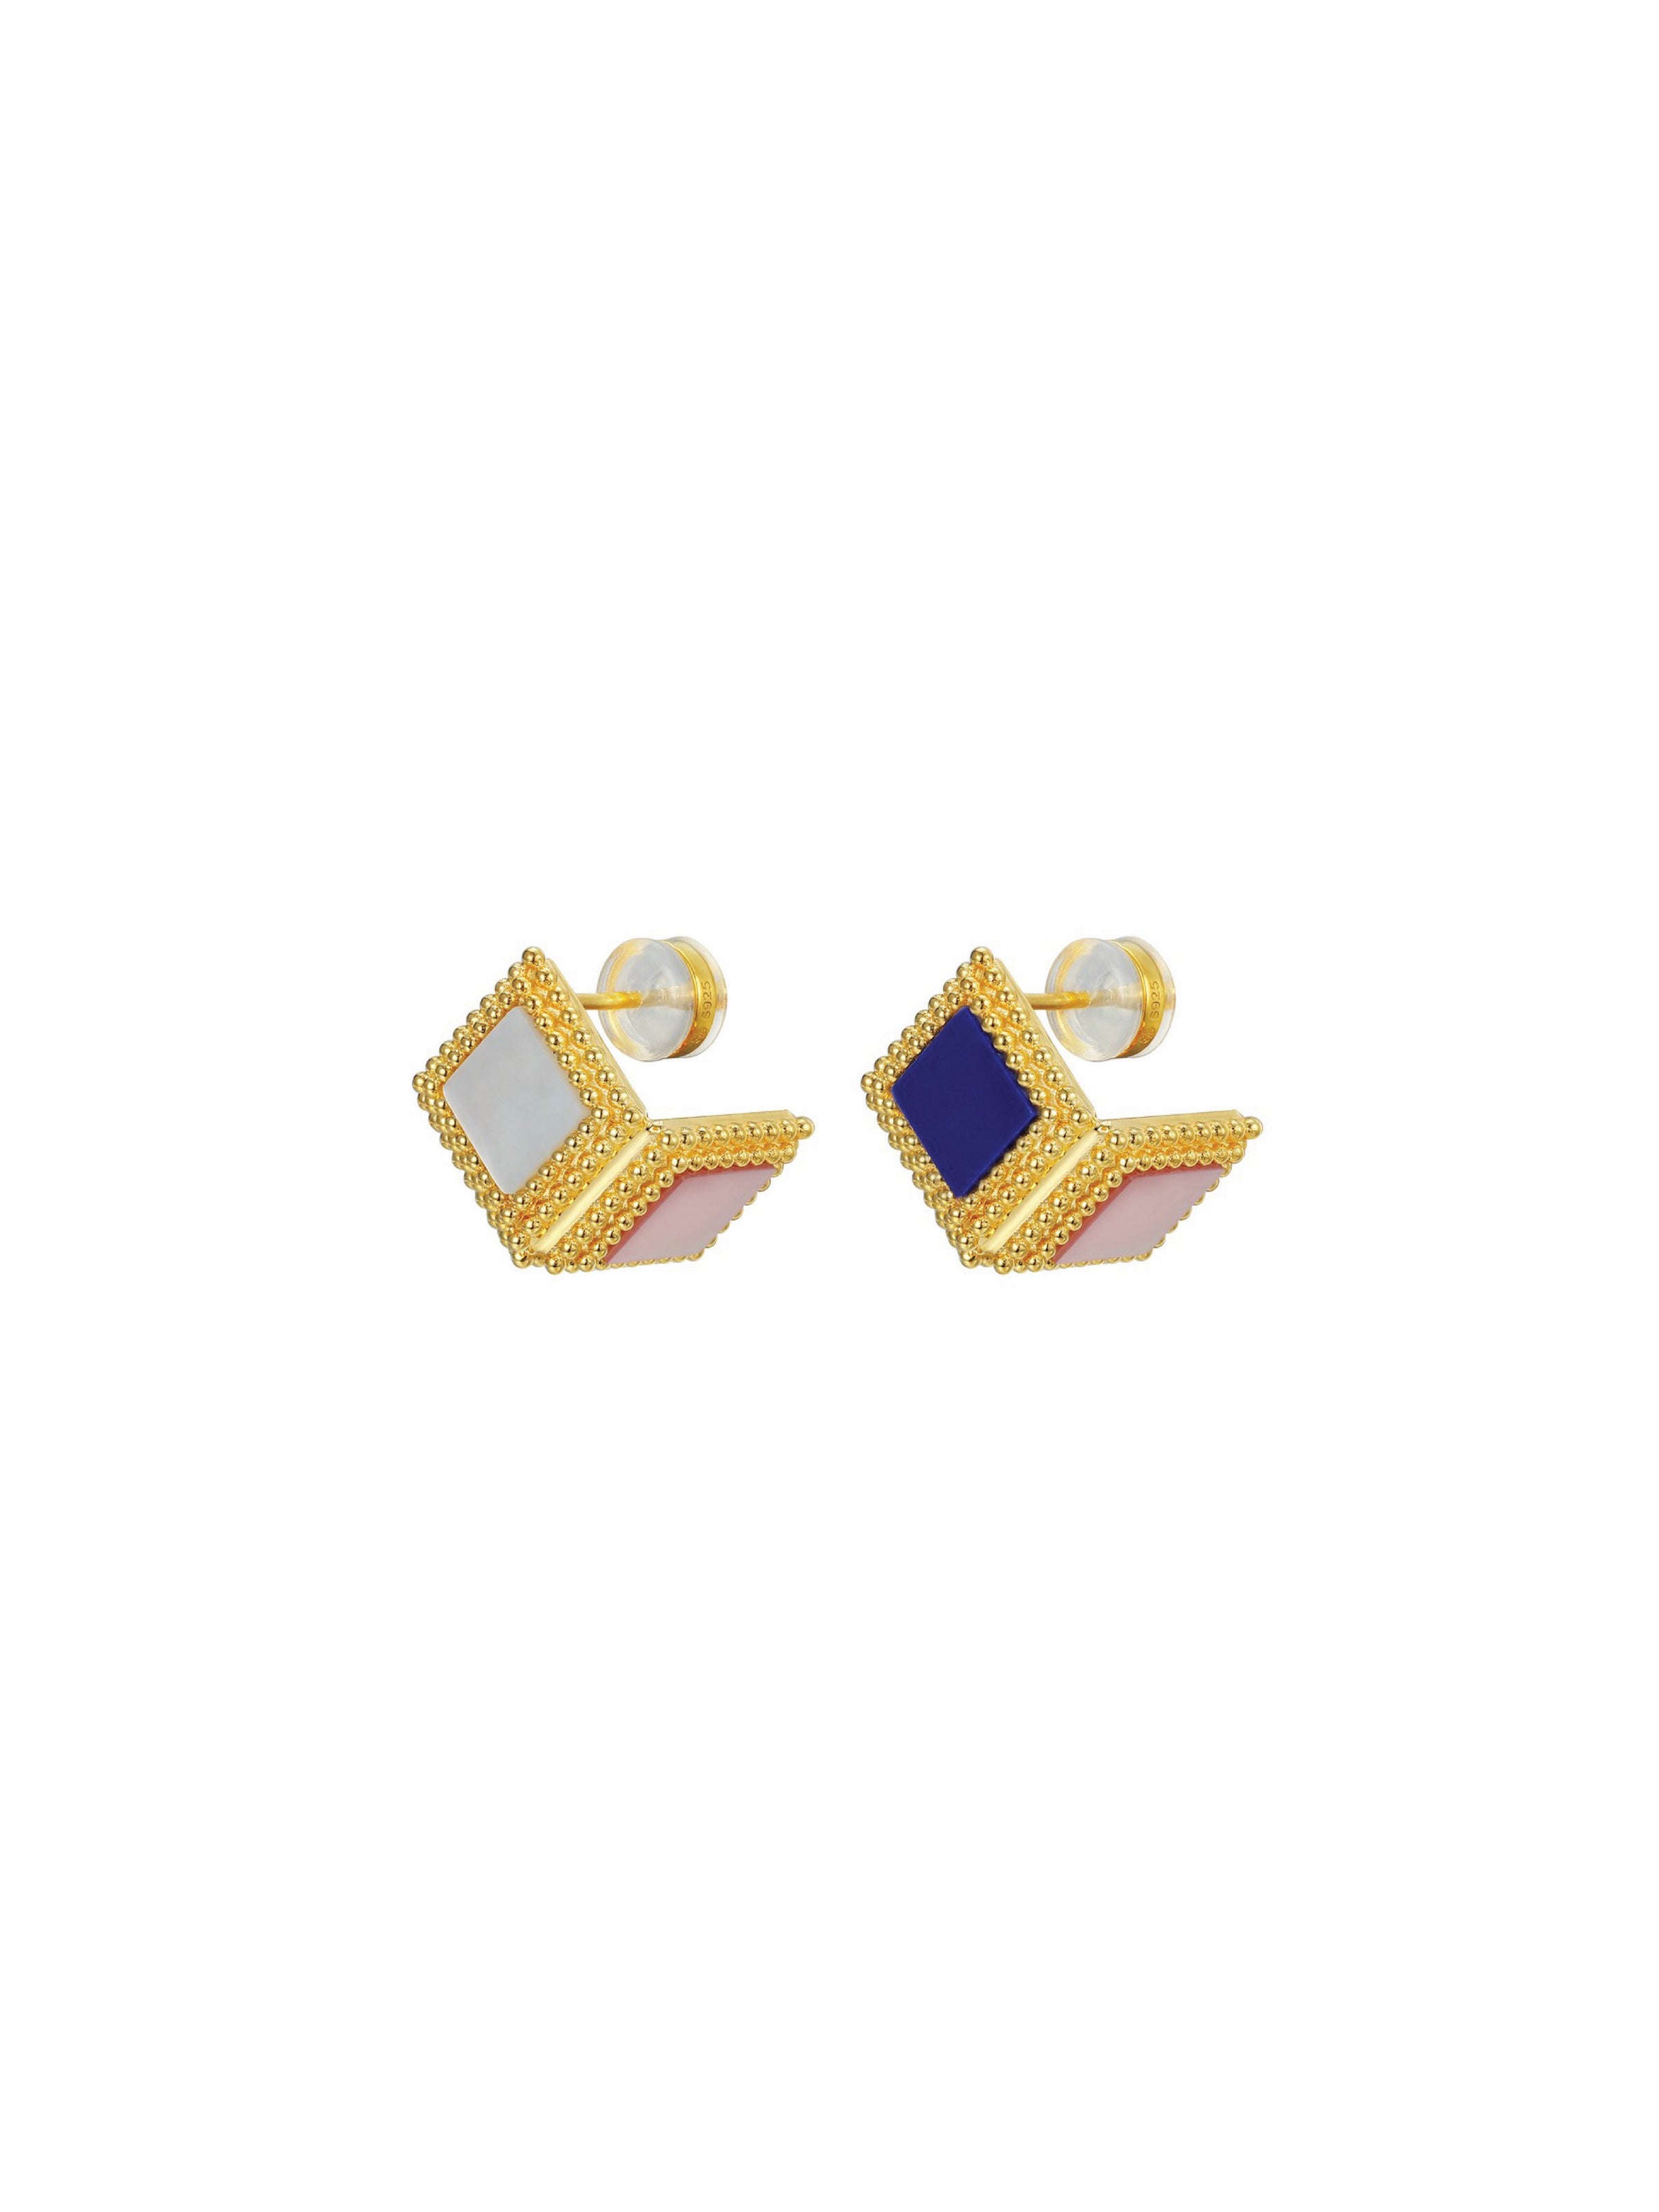 Enigma Earrings (Pair) - Orange Cube